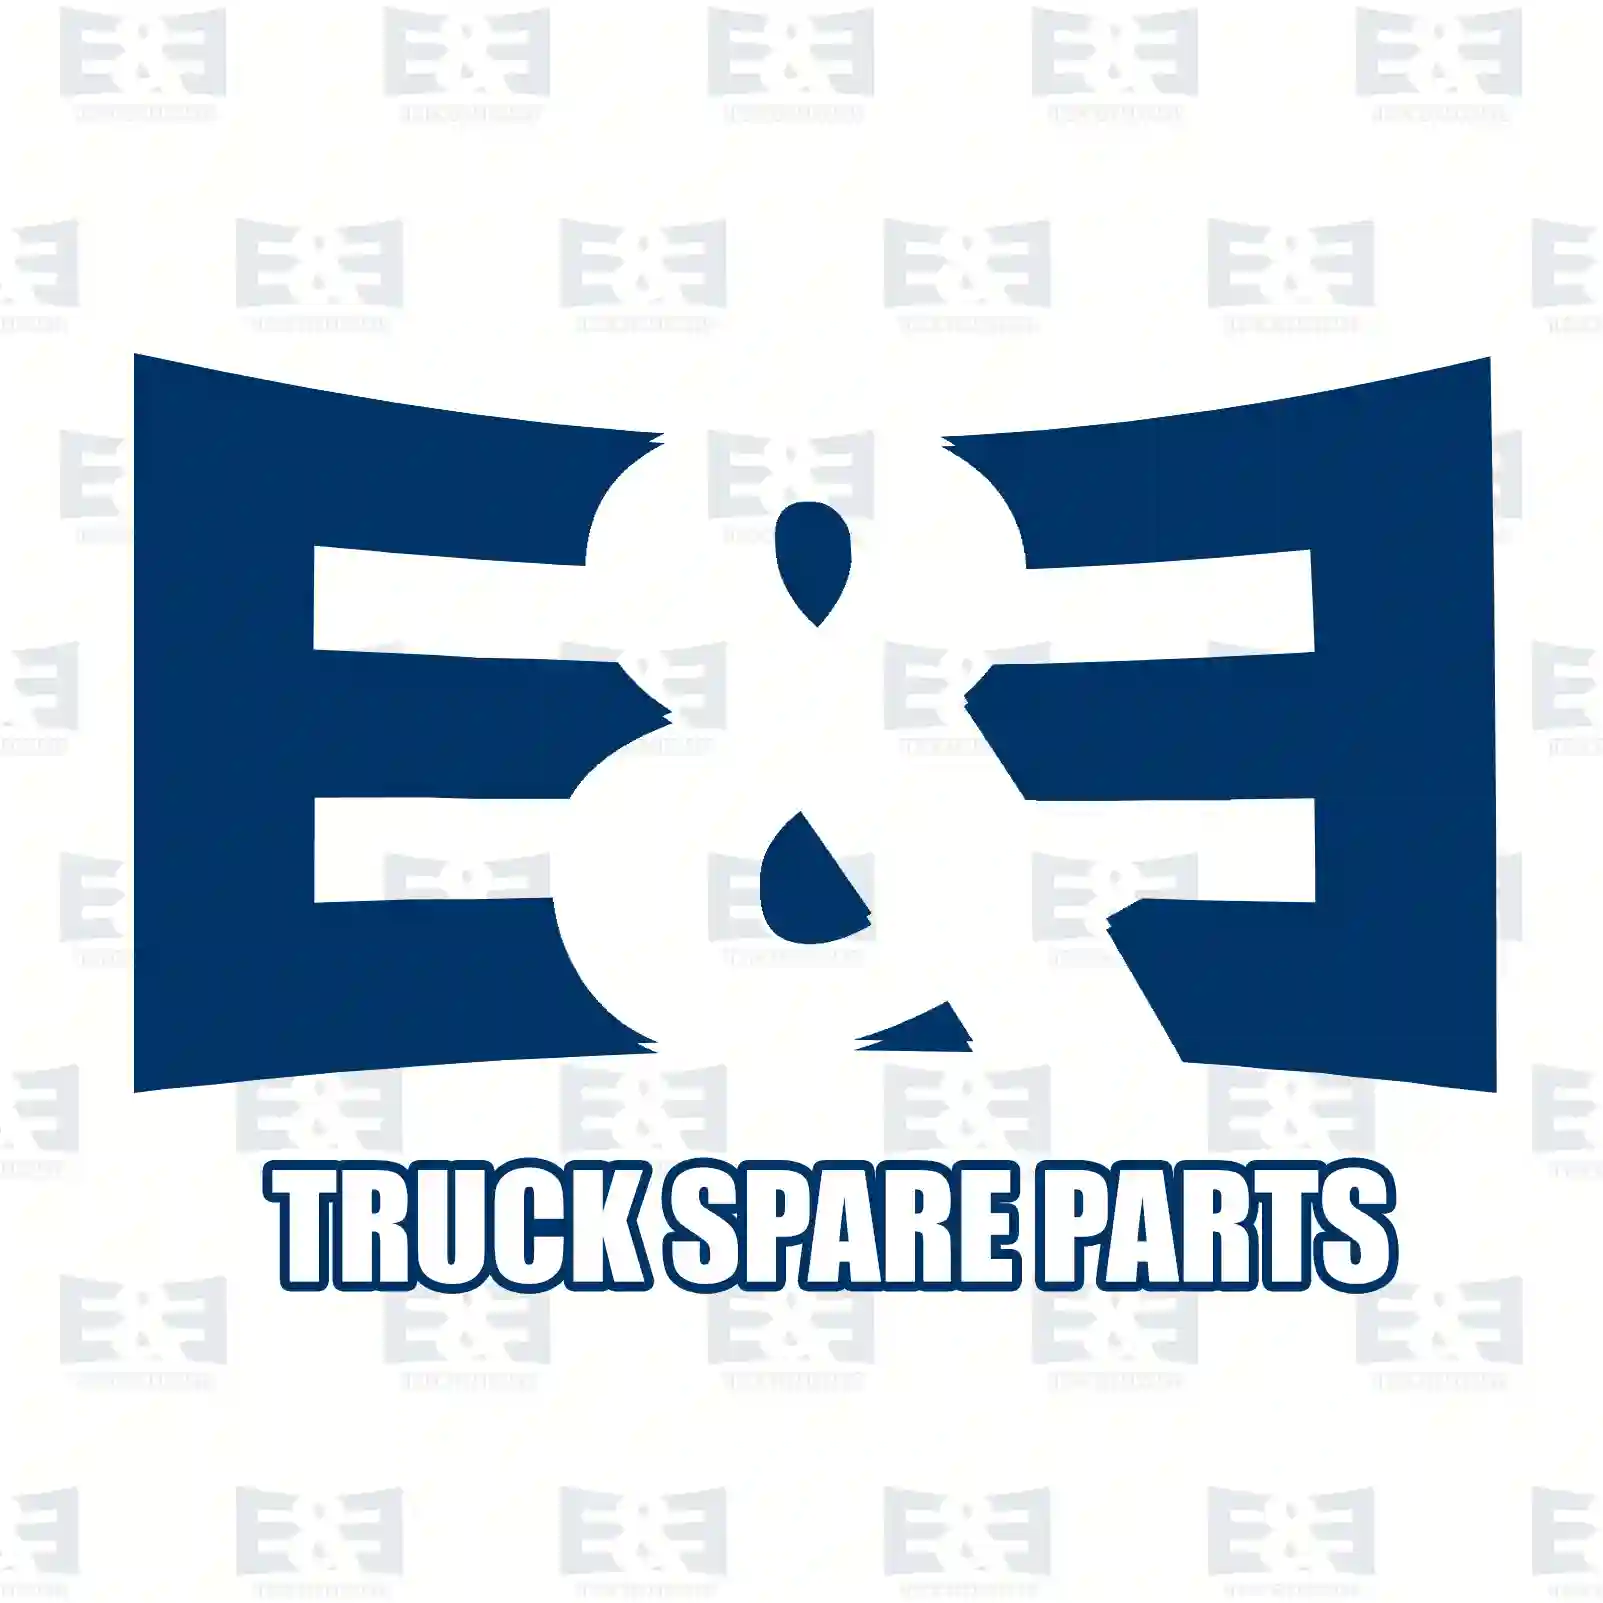 Brake carrier, right, 2E2296032, 81502020116, 81502020130, 81502020138 ||  2E2296032 E&E Truck Spare Parts | Truck Spare Parts, Auotomotive Spare Parts Brake carrier, right, 2E2296032, 81502020116, 81502020130, 81502020138 ||  2E2296032 E&E Truck Spare Parts | Truck Spare Parts, Auotomotive Spare Parts